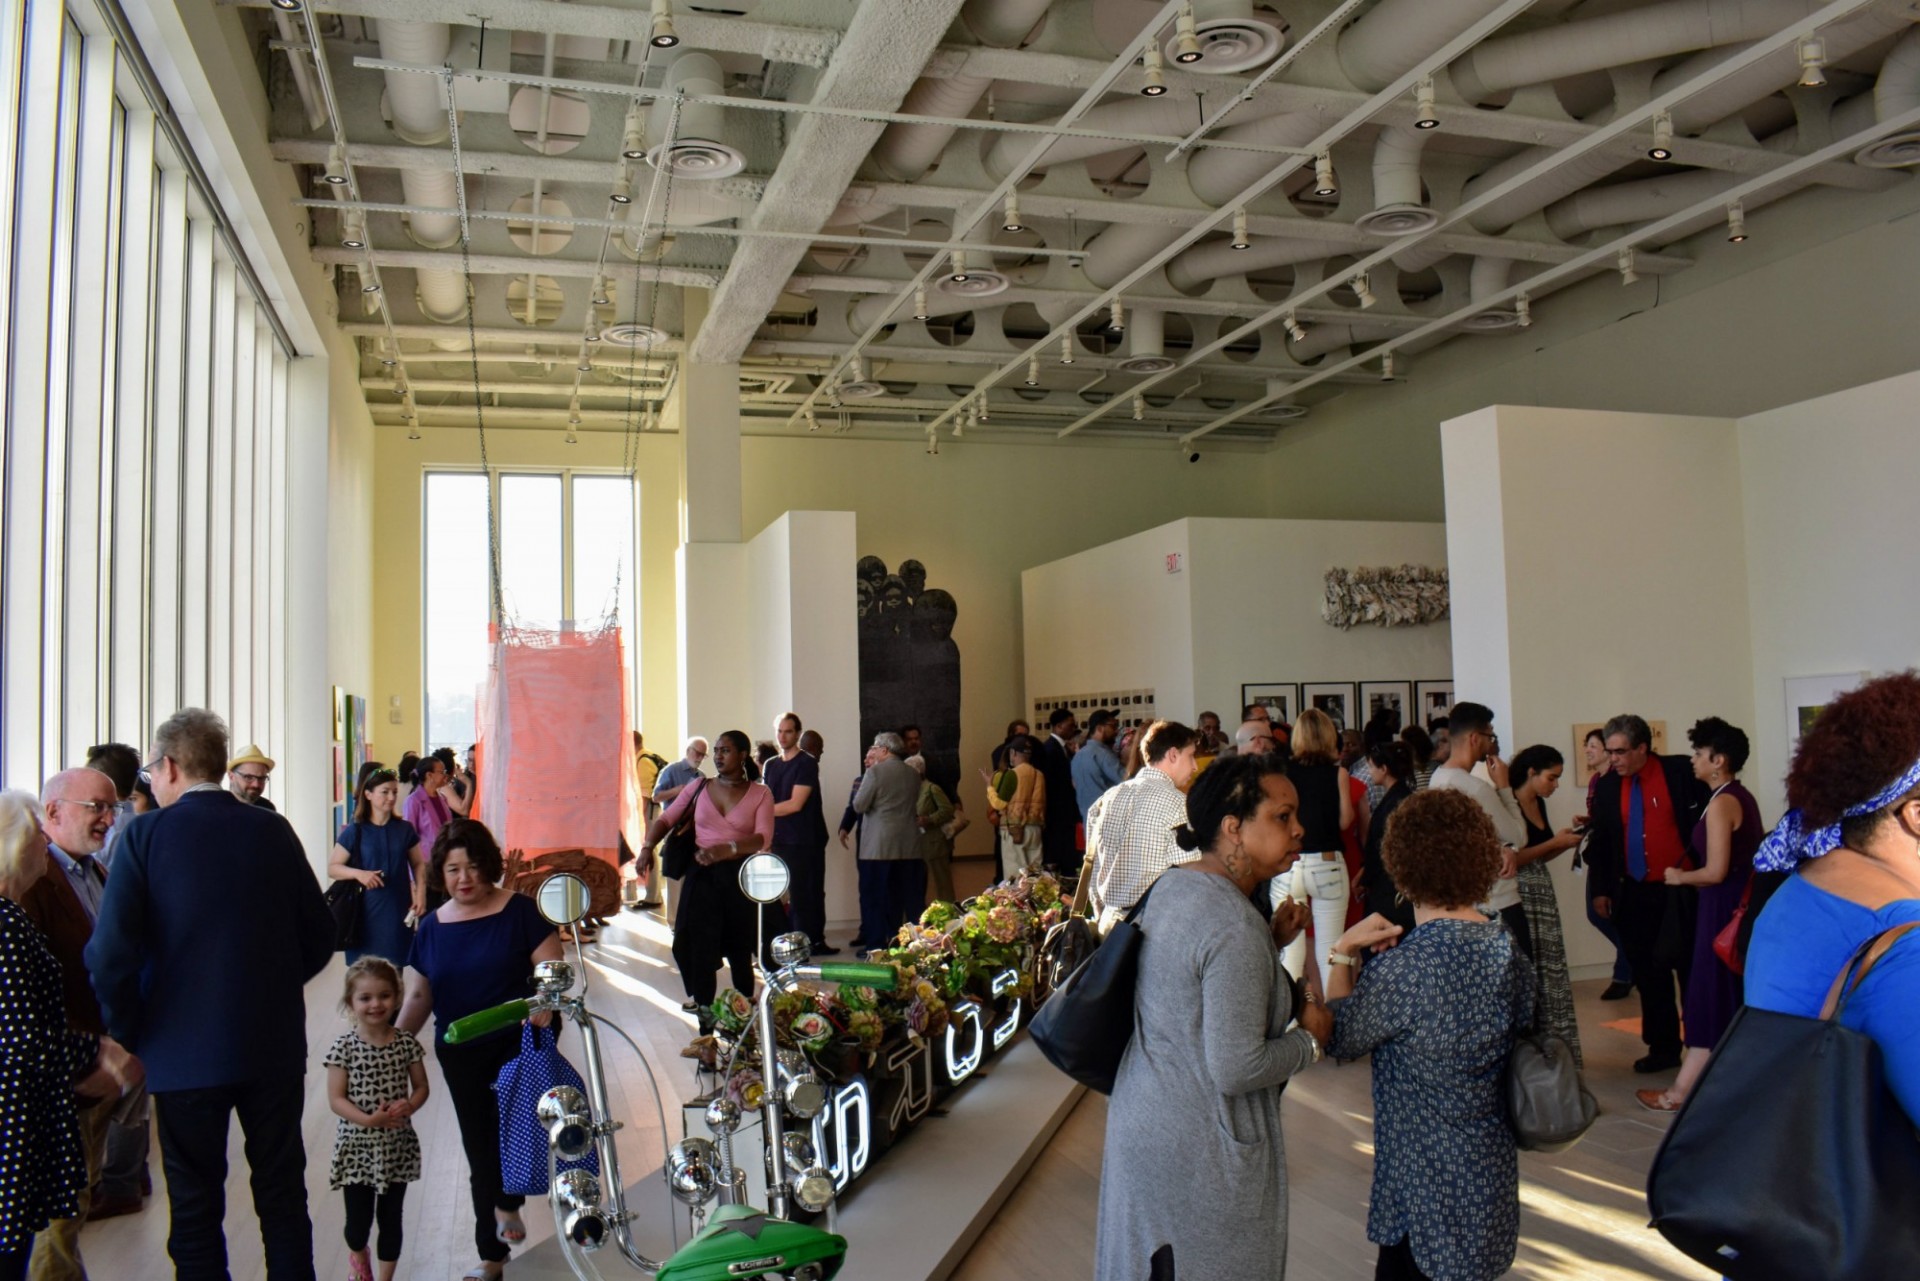 Visitors explore the Uptown exhibit.